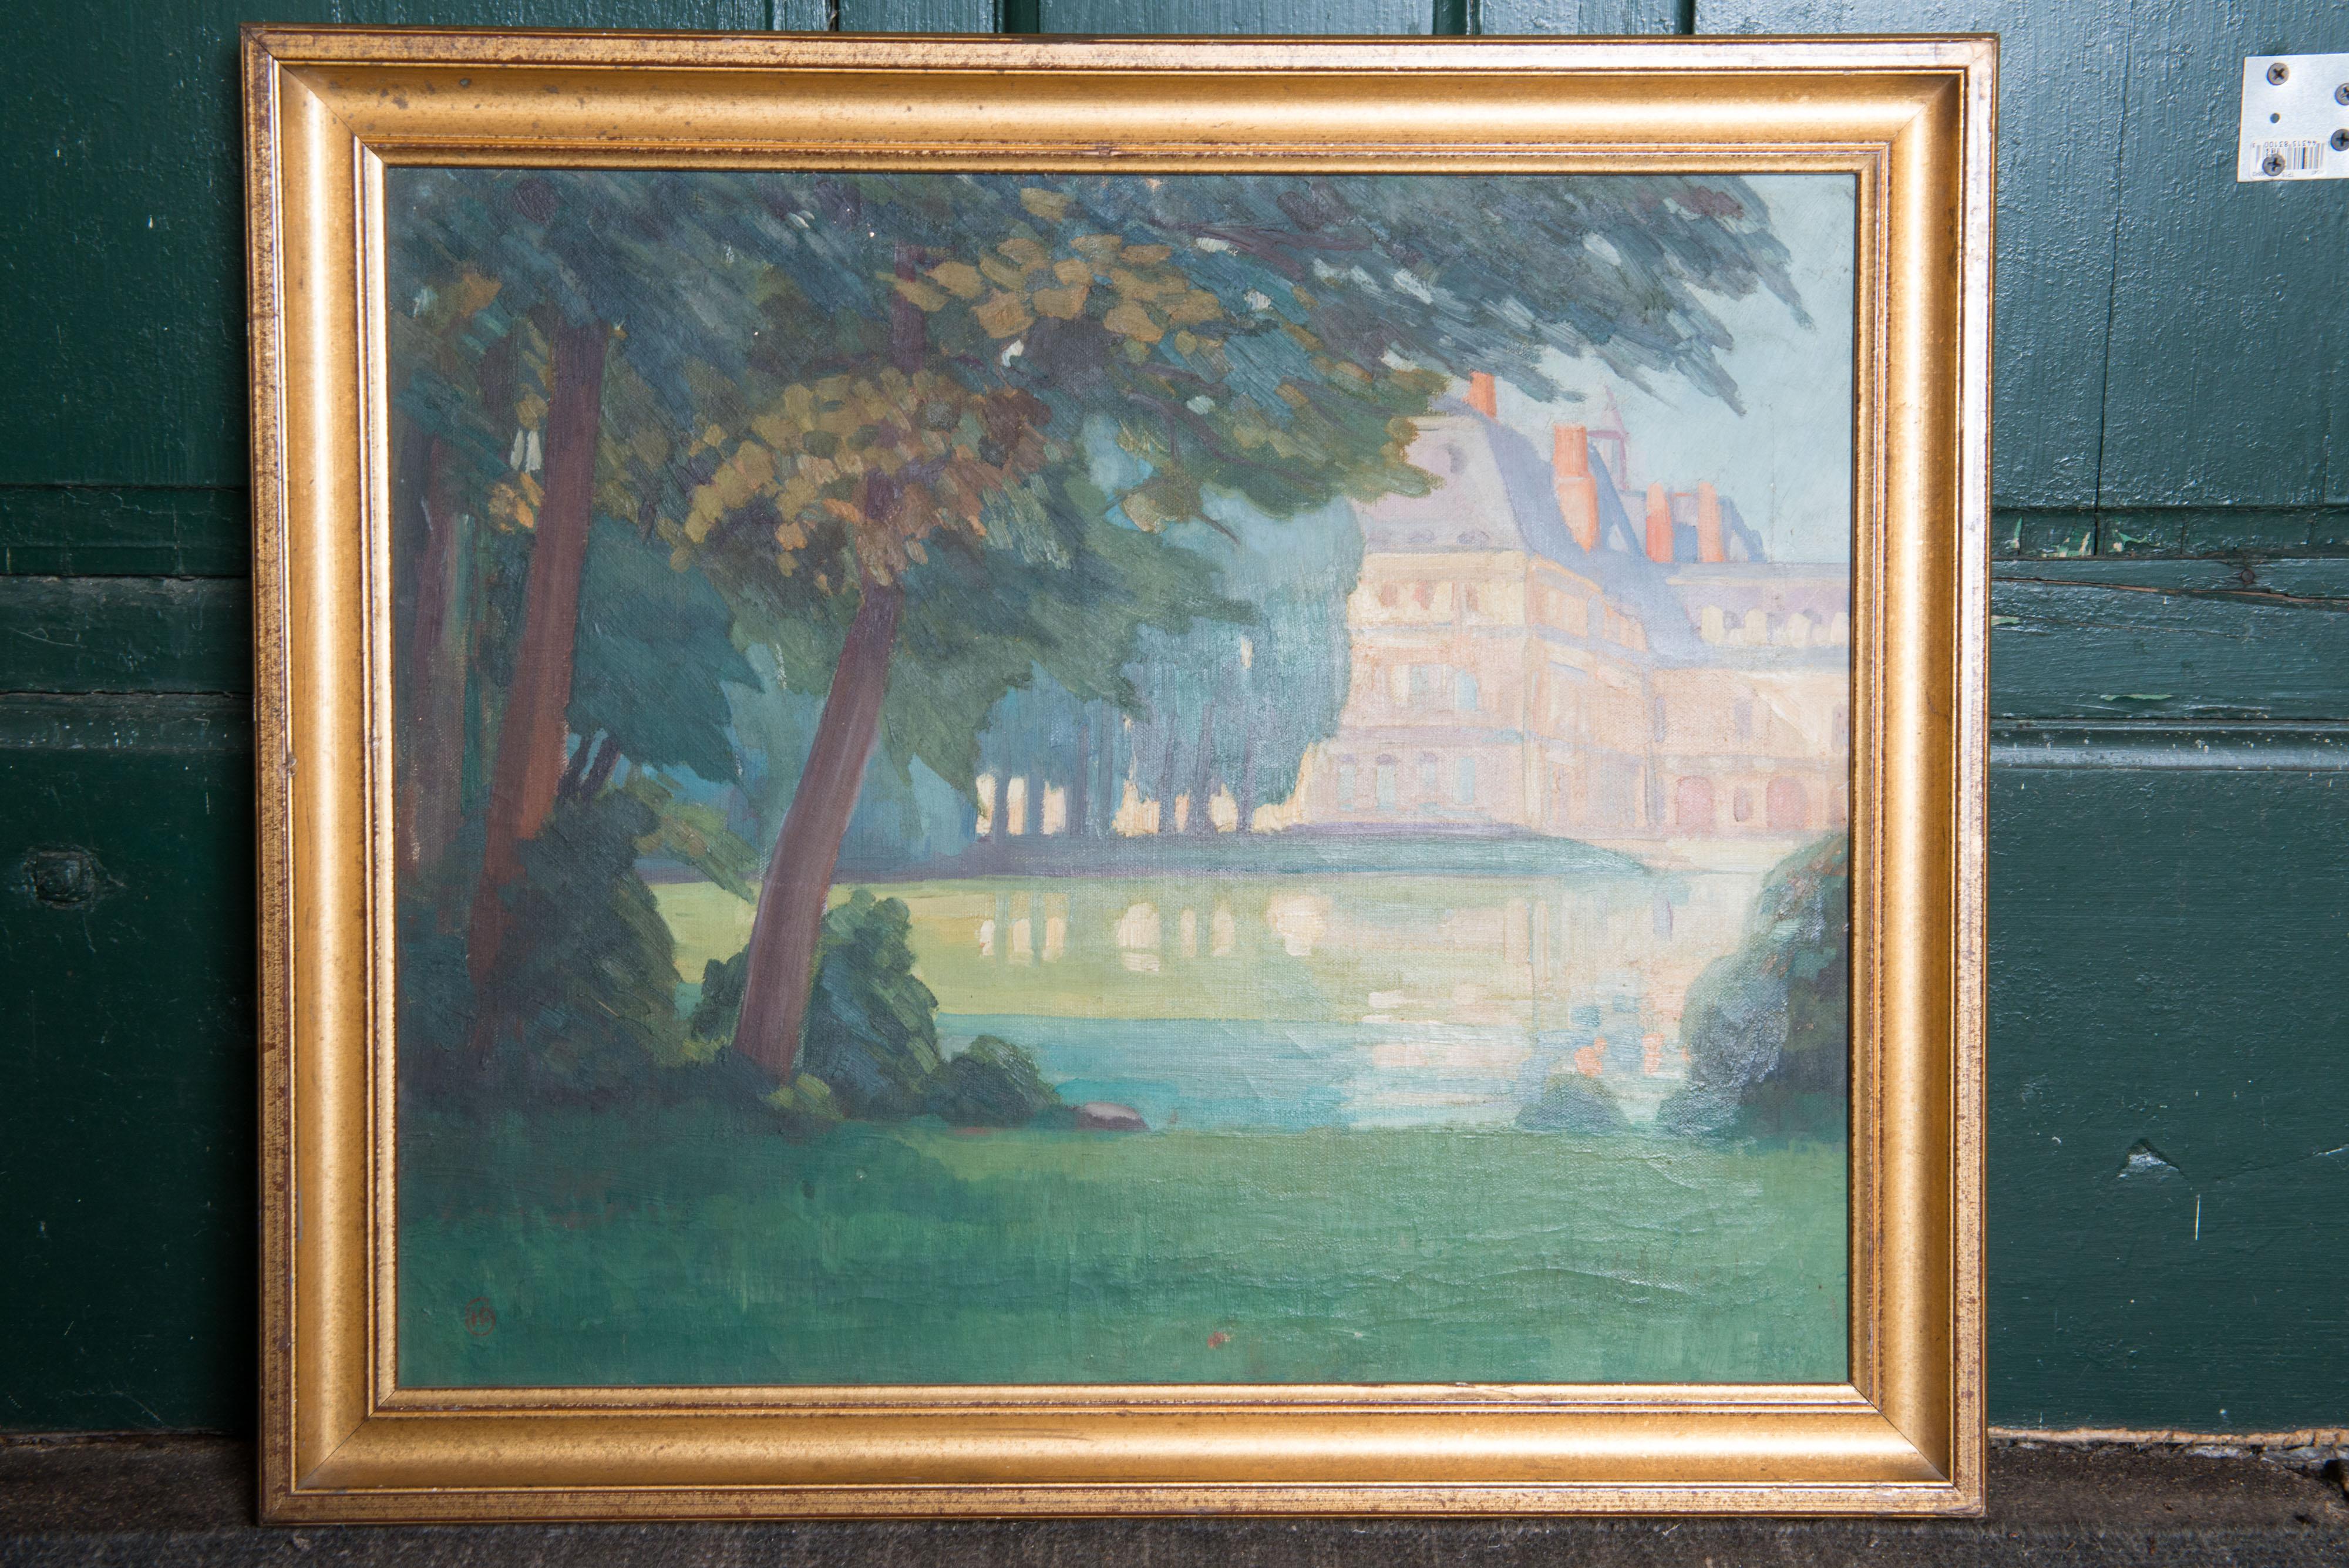 Une huile sur toile de l'époque de Napoléon III représentant un château et un paysage dans un cadre doré.  Une belle composition en très bon état.